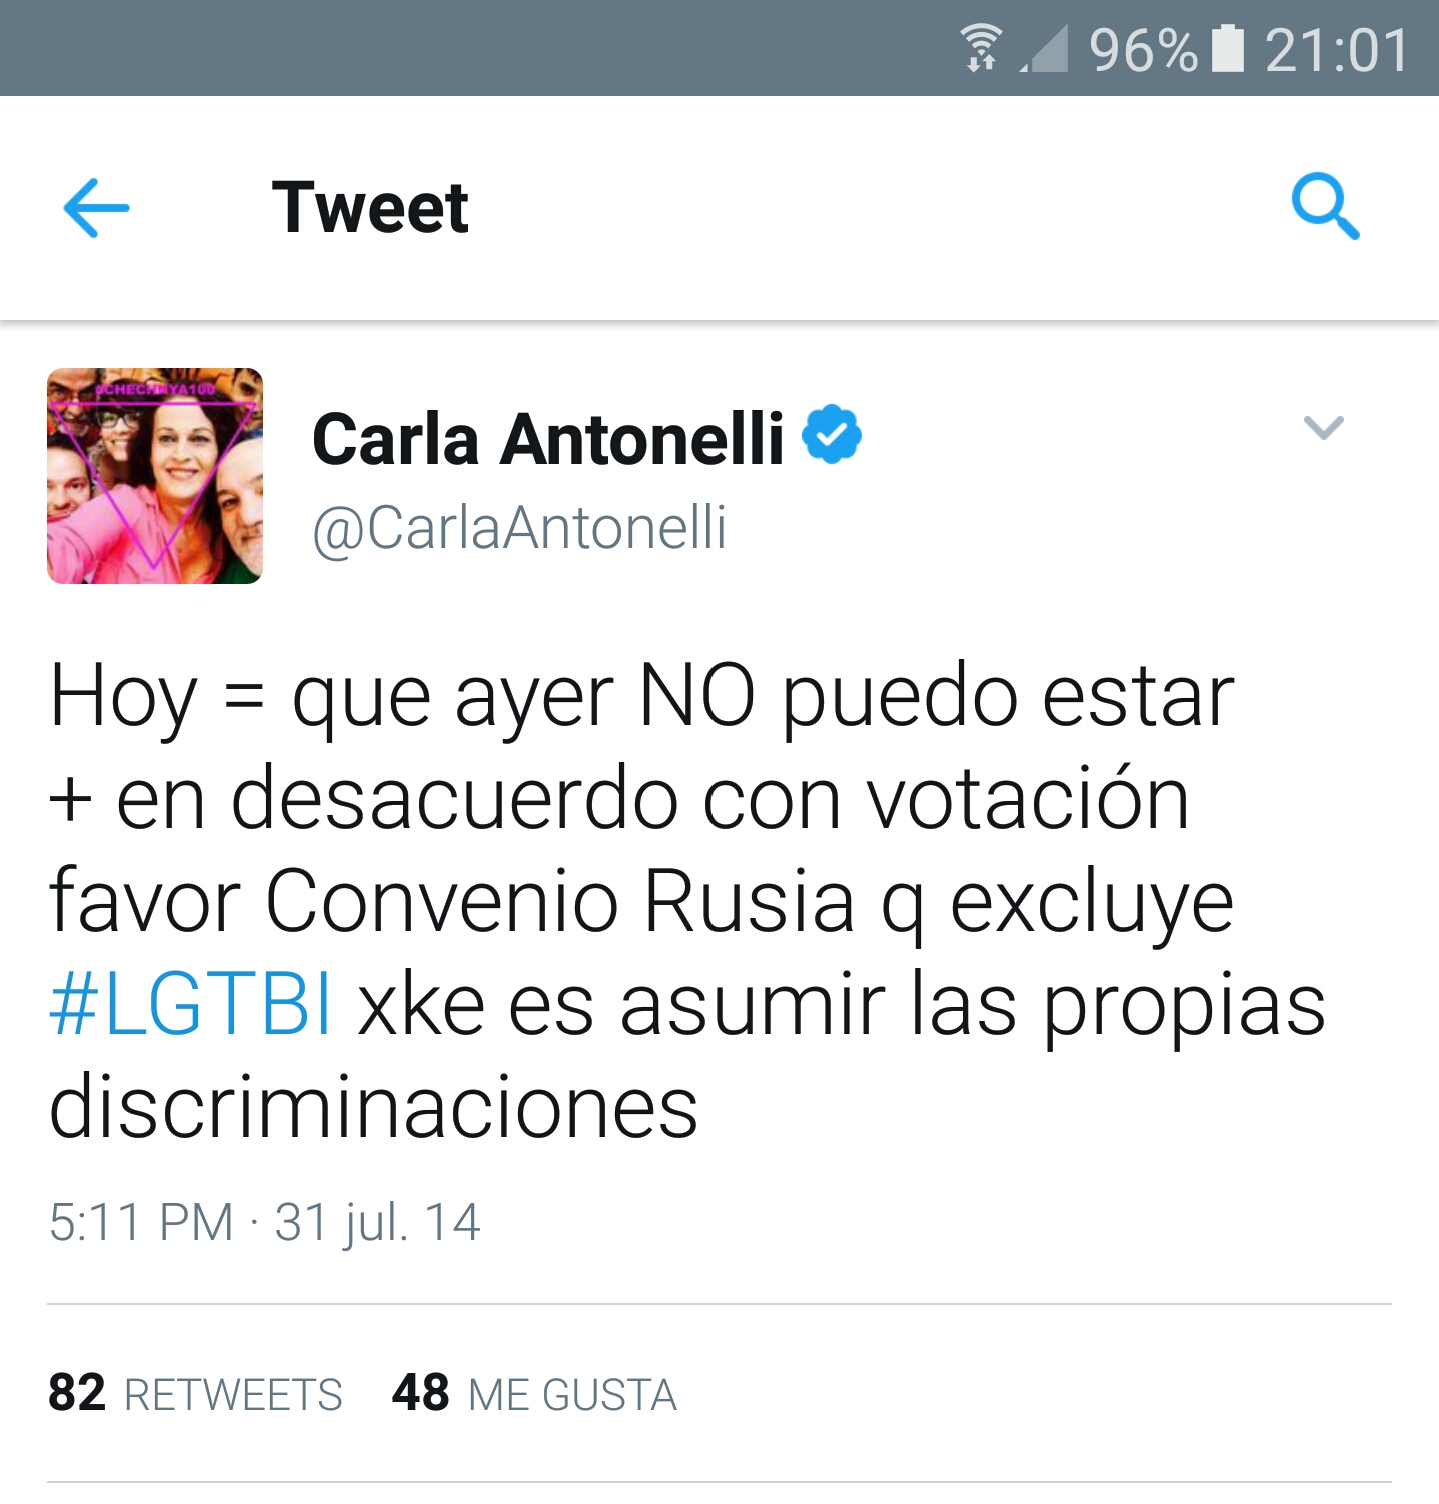 Tuit de Carla Antonelli en el que expresaba su desacuerdo al votar con el PP a favor del convenio con Rusia que excluye de la adopción a homosexuales